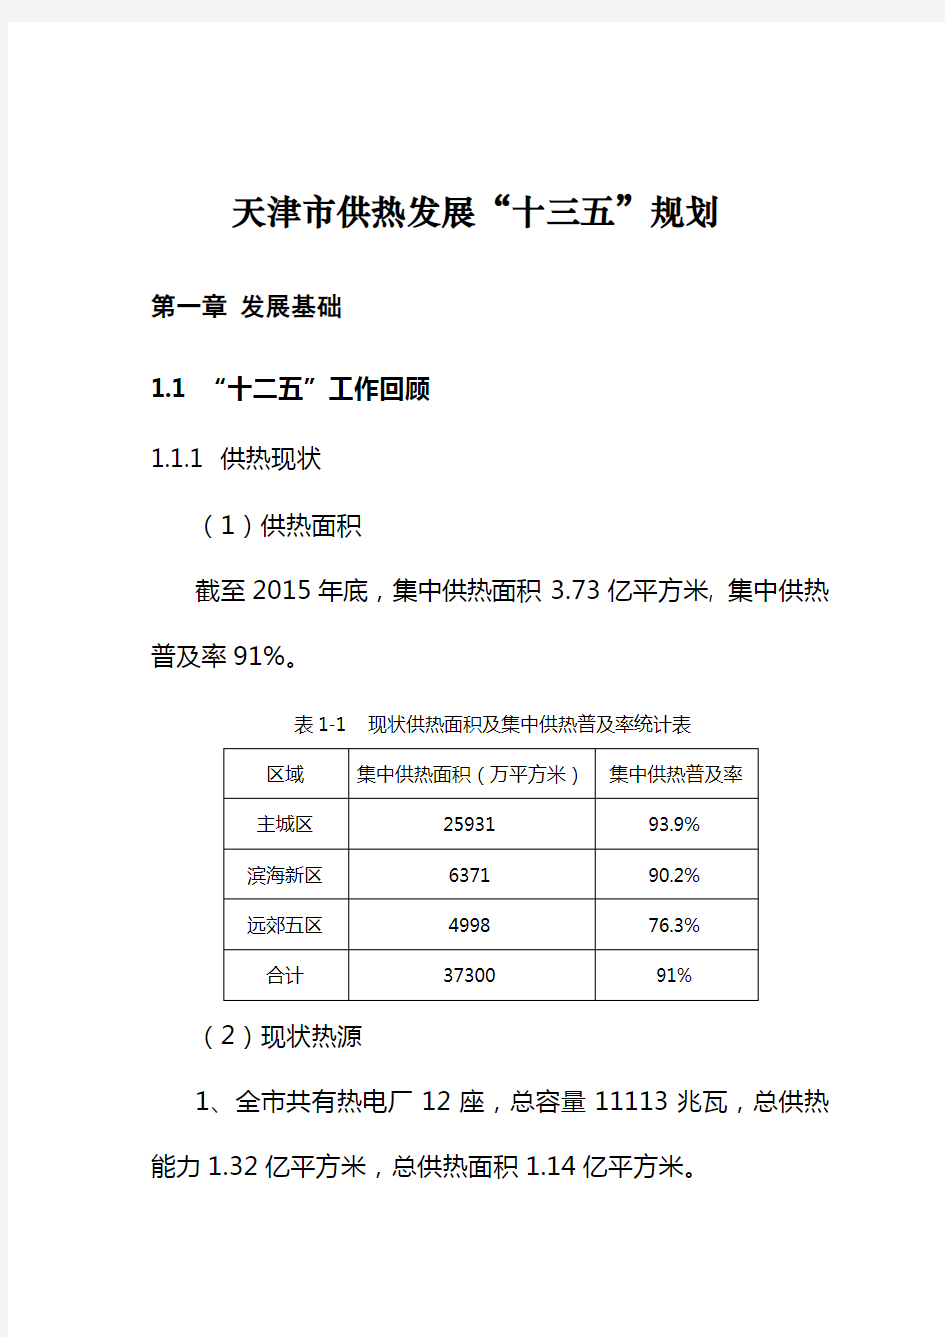 天津南港工业区分区规划(-2023年)简要说明